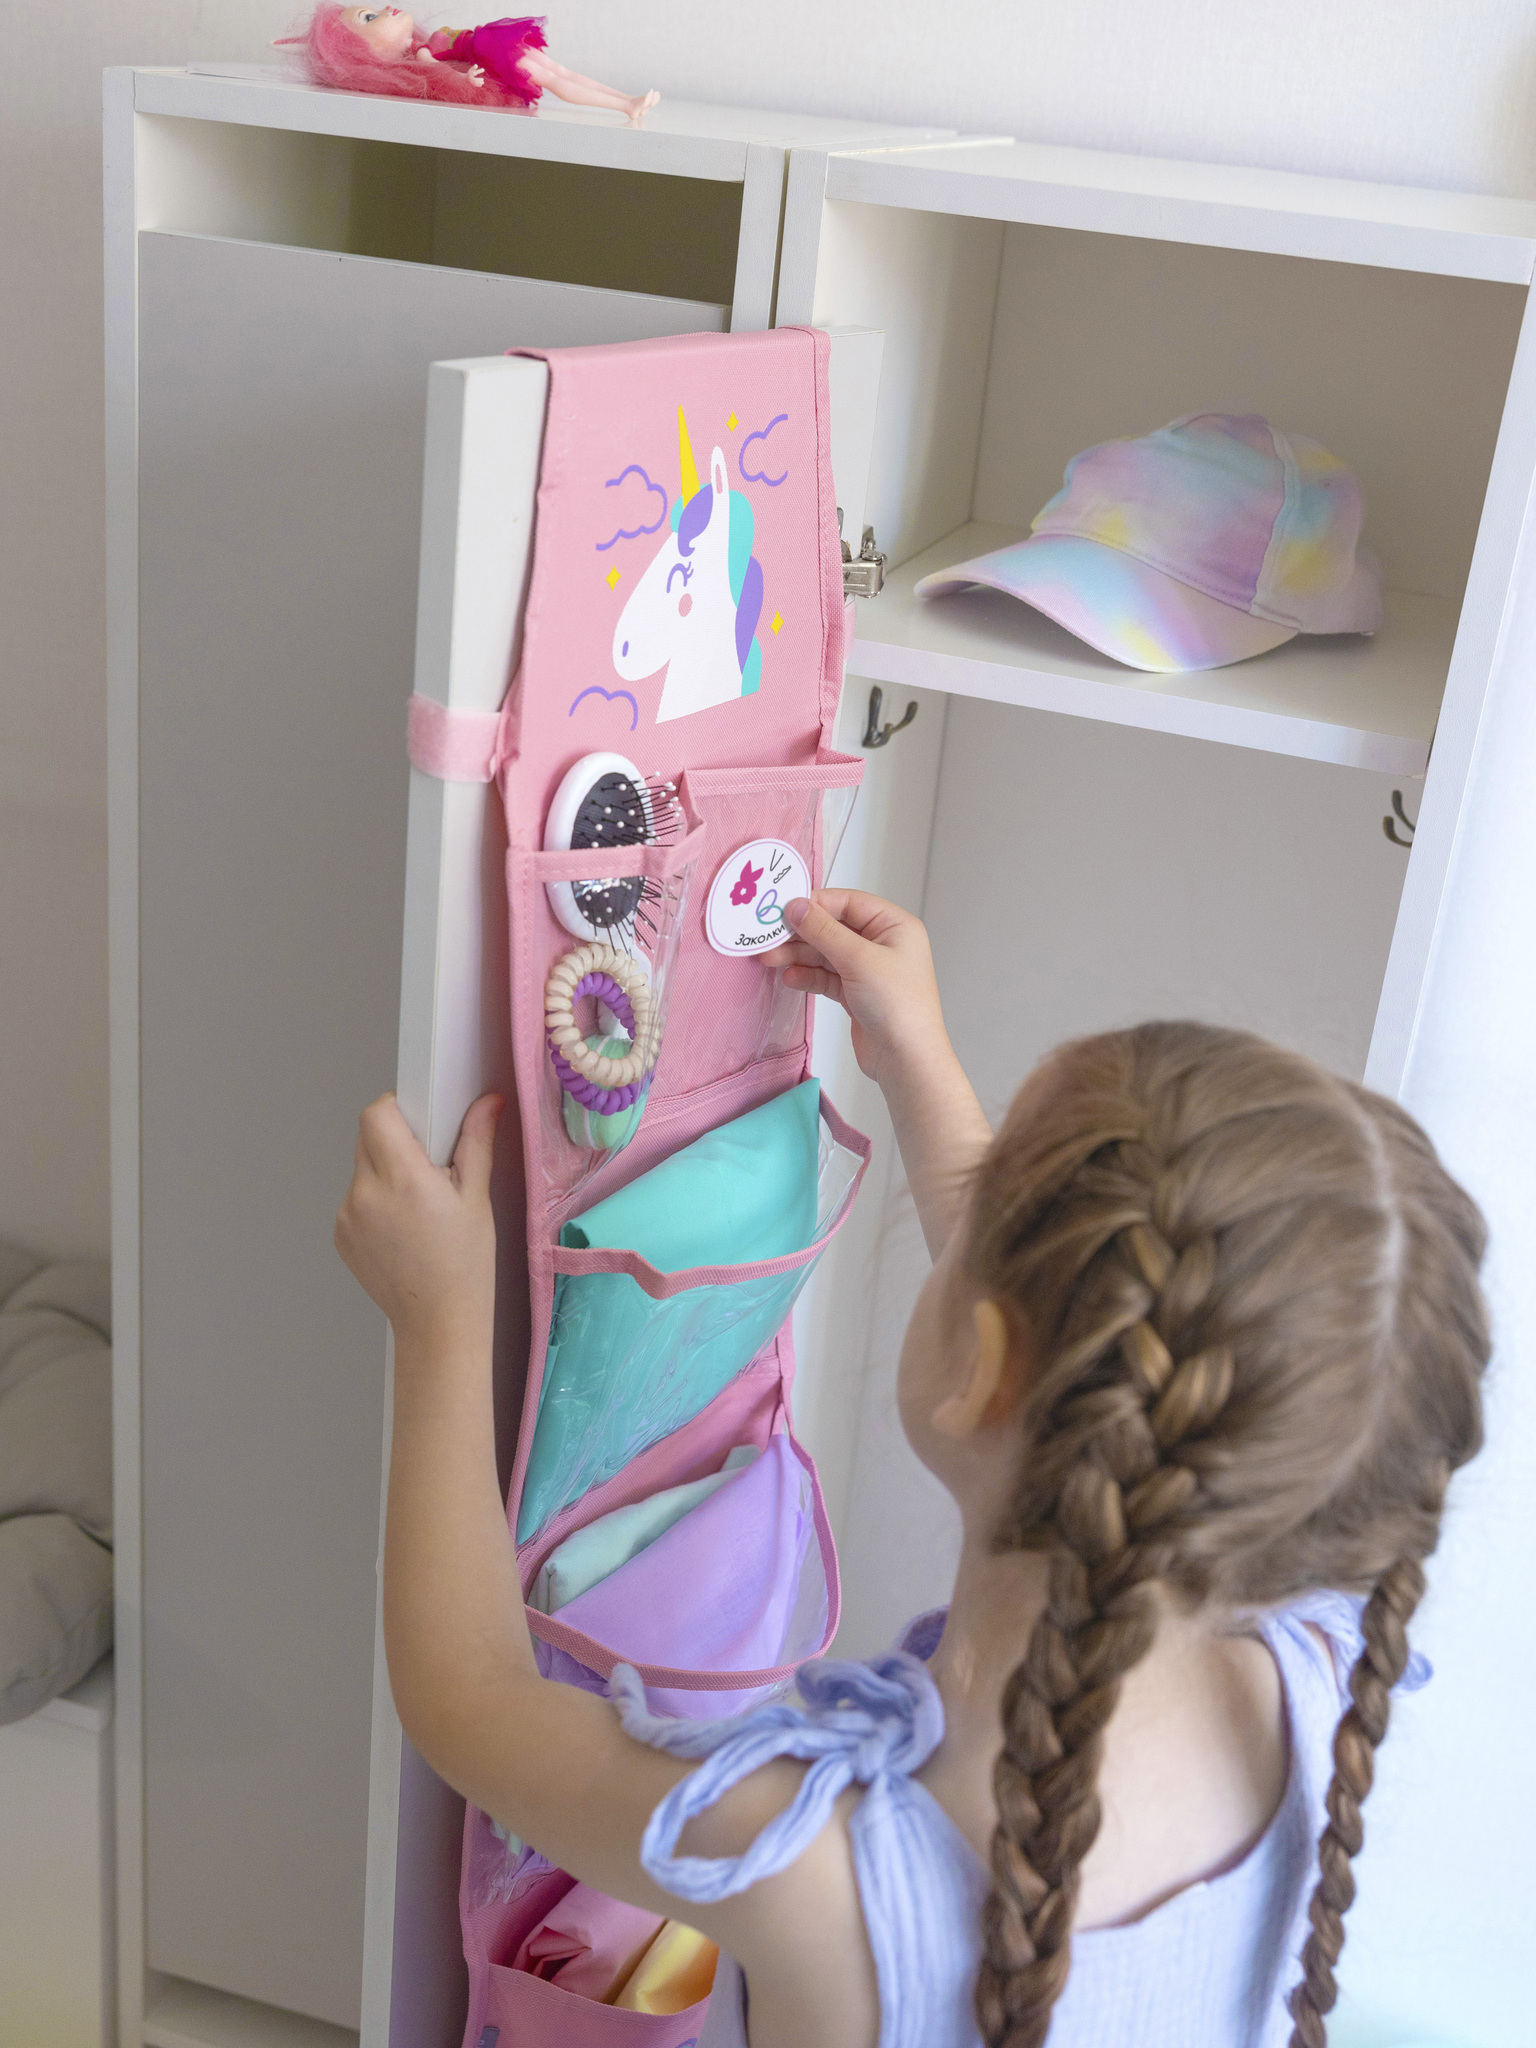 Кармашки в садик для детского шкафчика 83х24 см, Единорог (розовый)